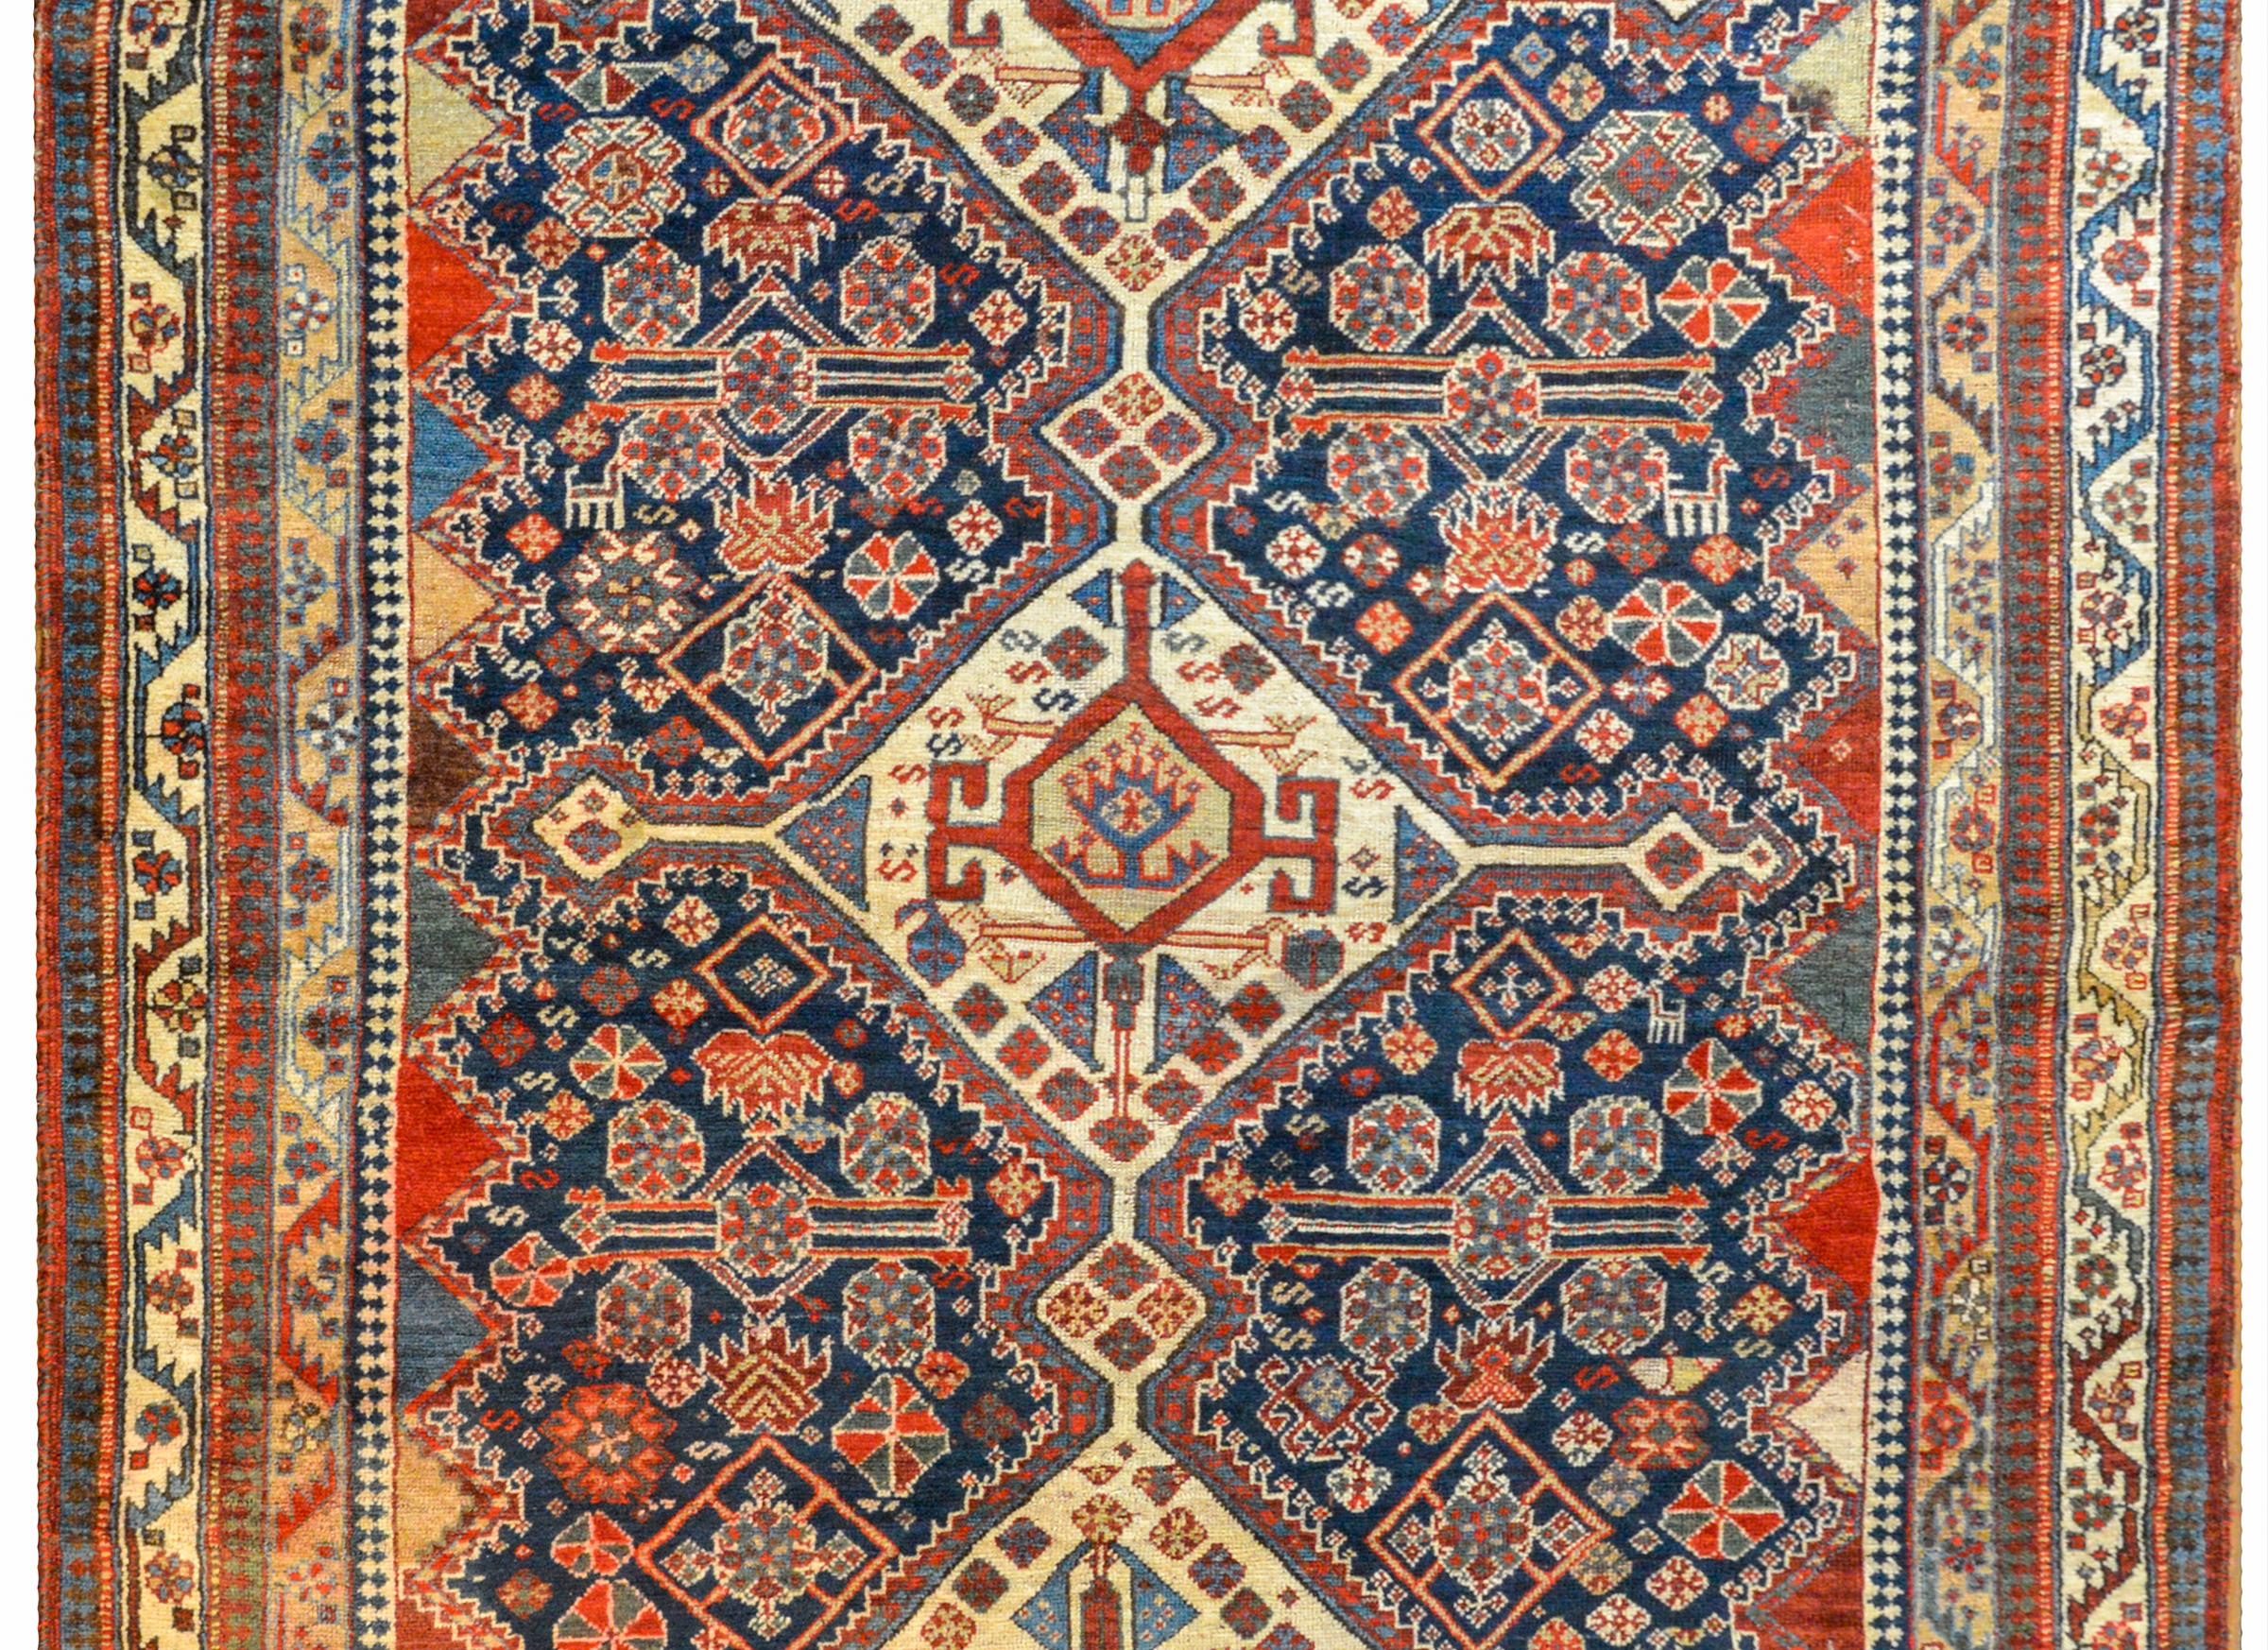 Extraordinaire tapis persan Ghashgaei du début du XXe siècle, avec trois grands médaillons centraux en forme de diamant sur un champ de myriades de fleurs et de chèvres stylisées densément tissées en cramoisi, indigo clair et crème, sur un fond